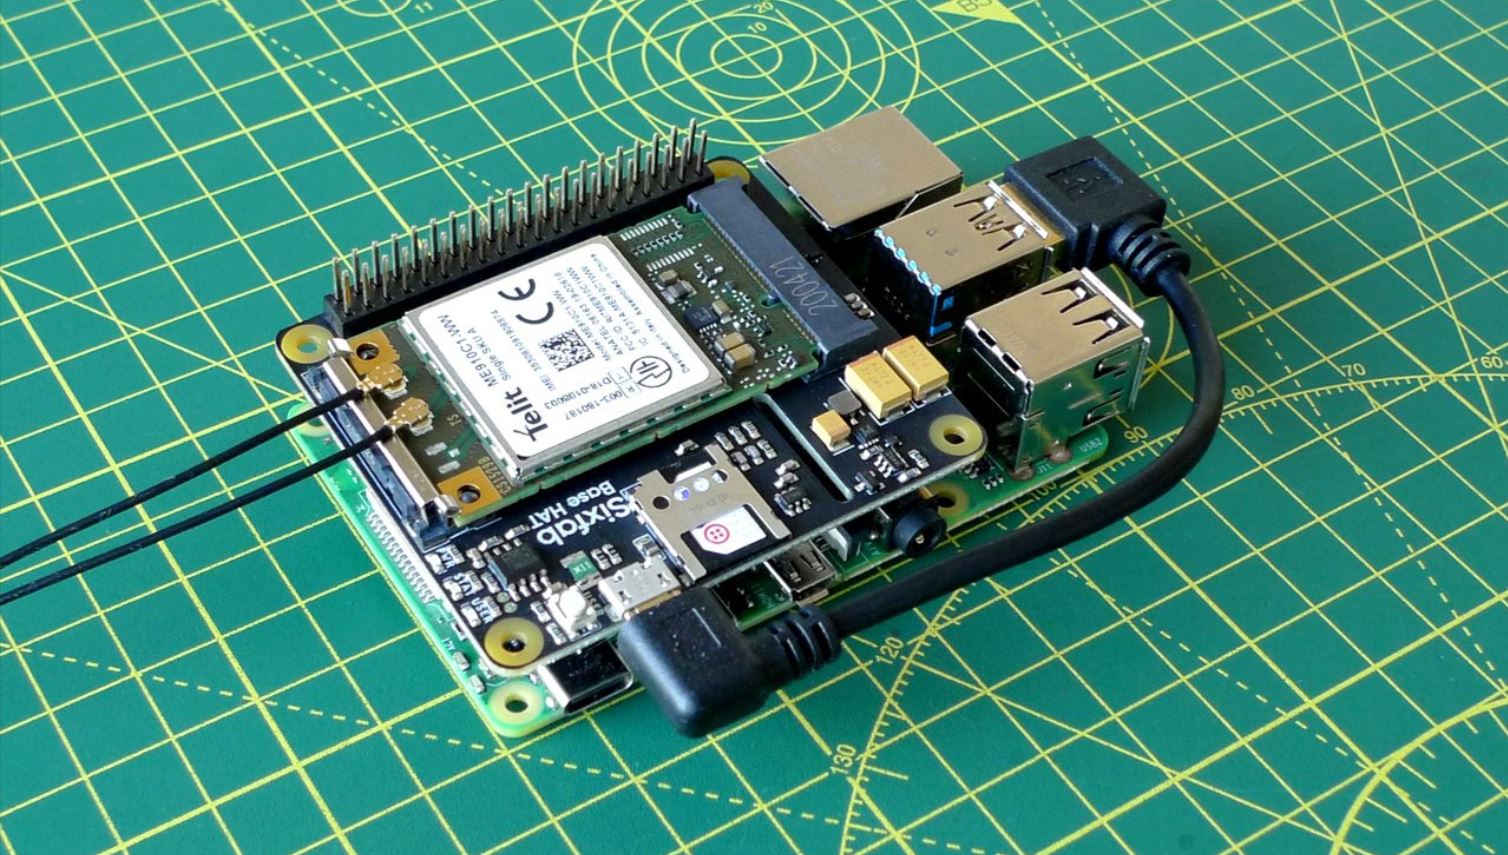 How Do I Setup My Raspberry Pi As An IoT Device?